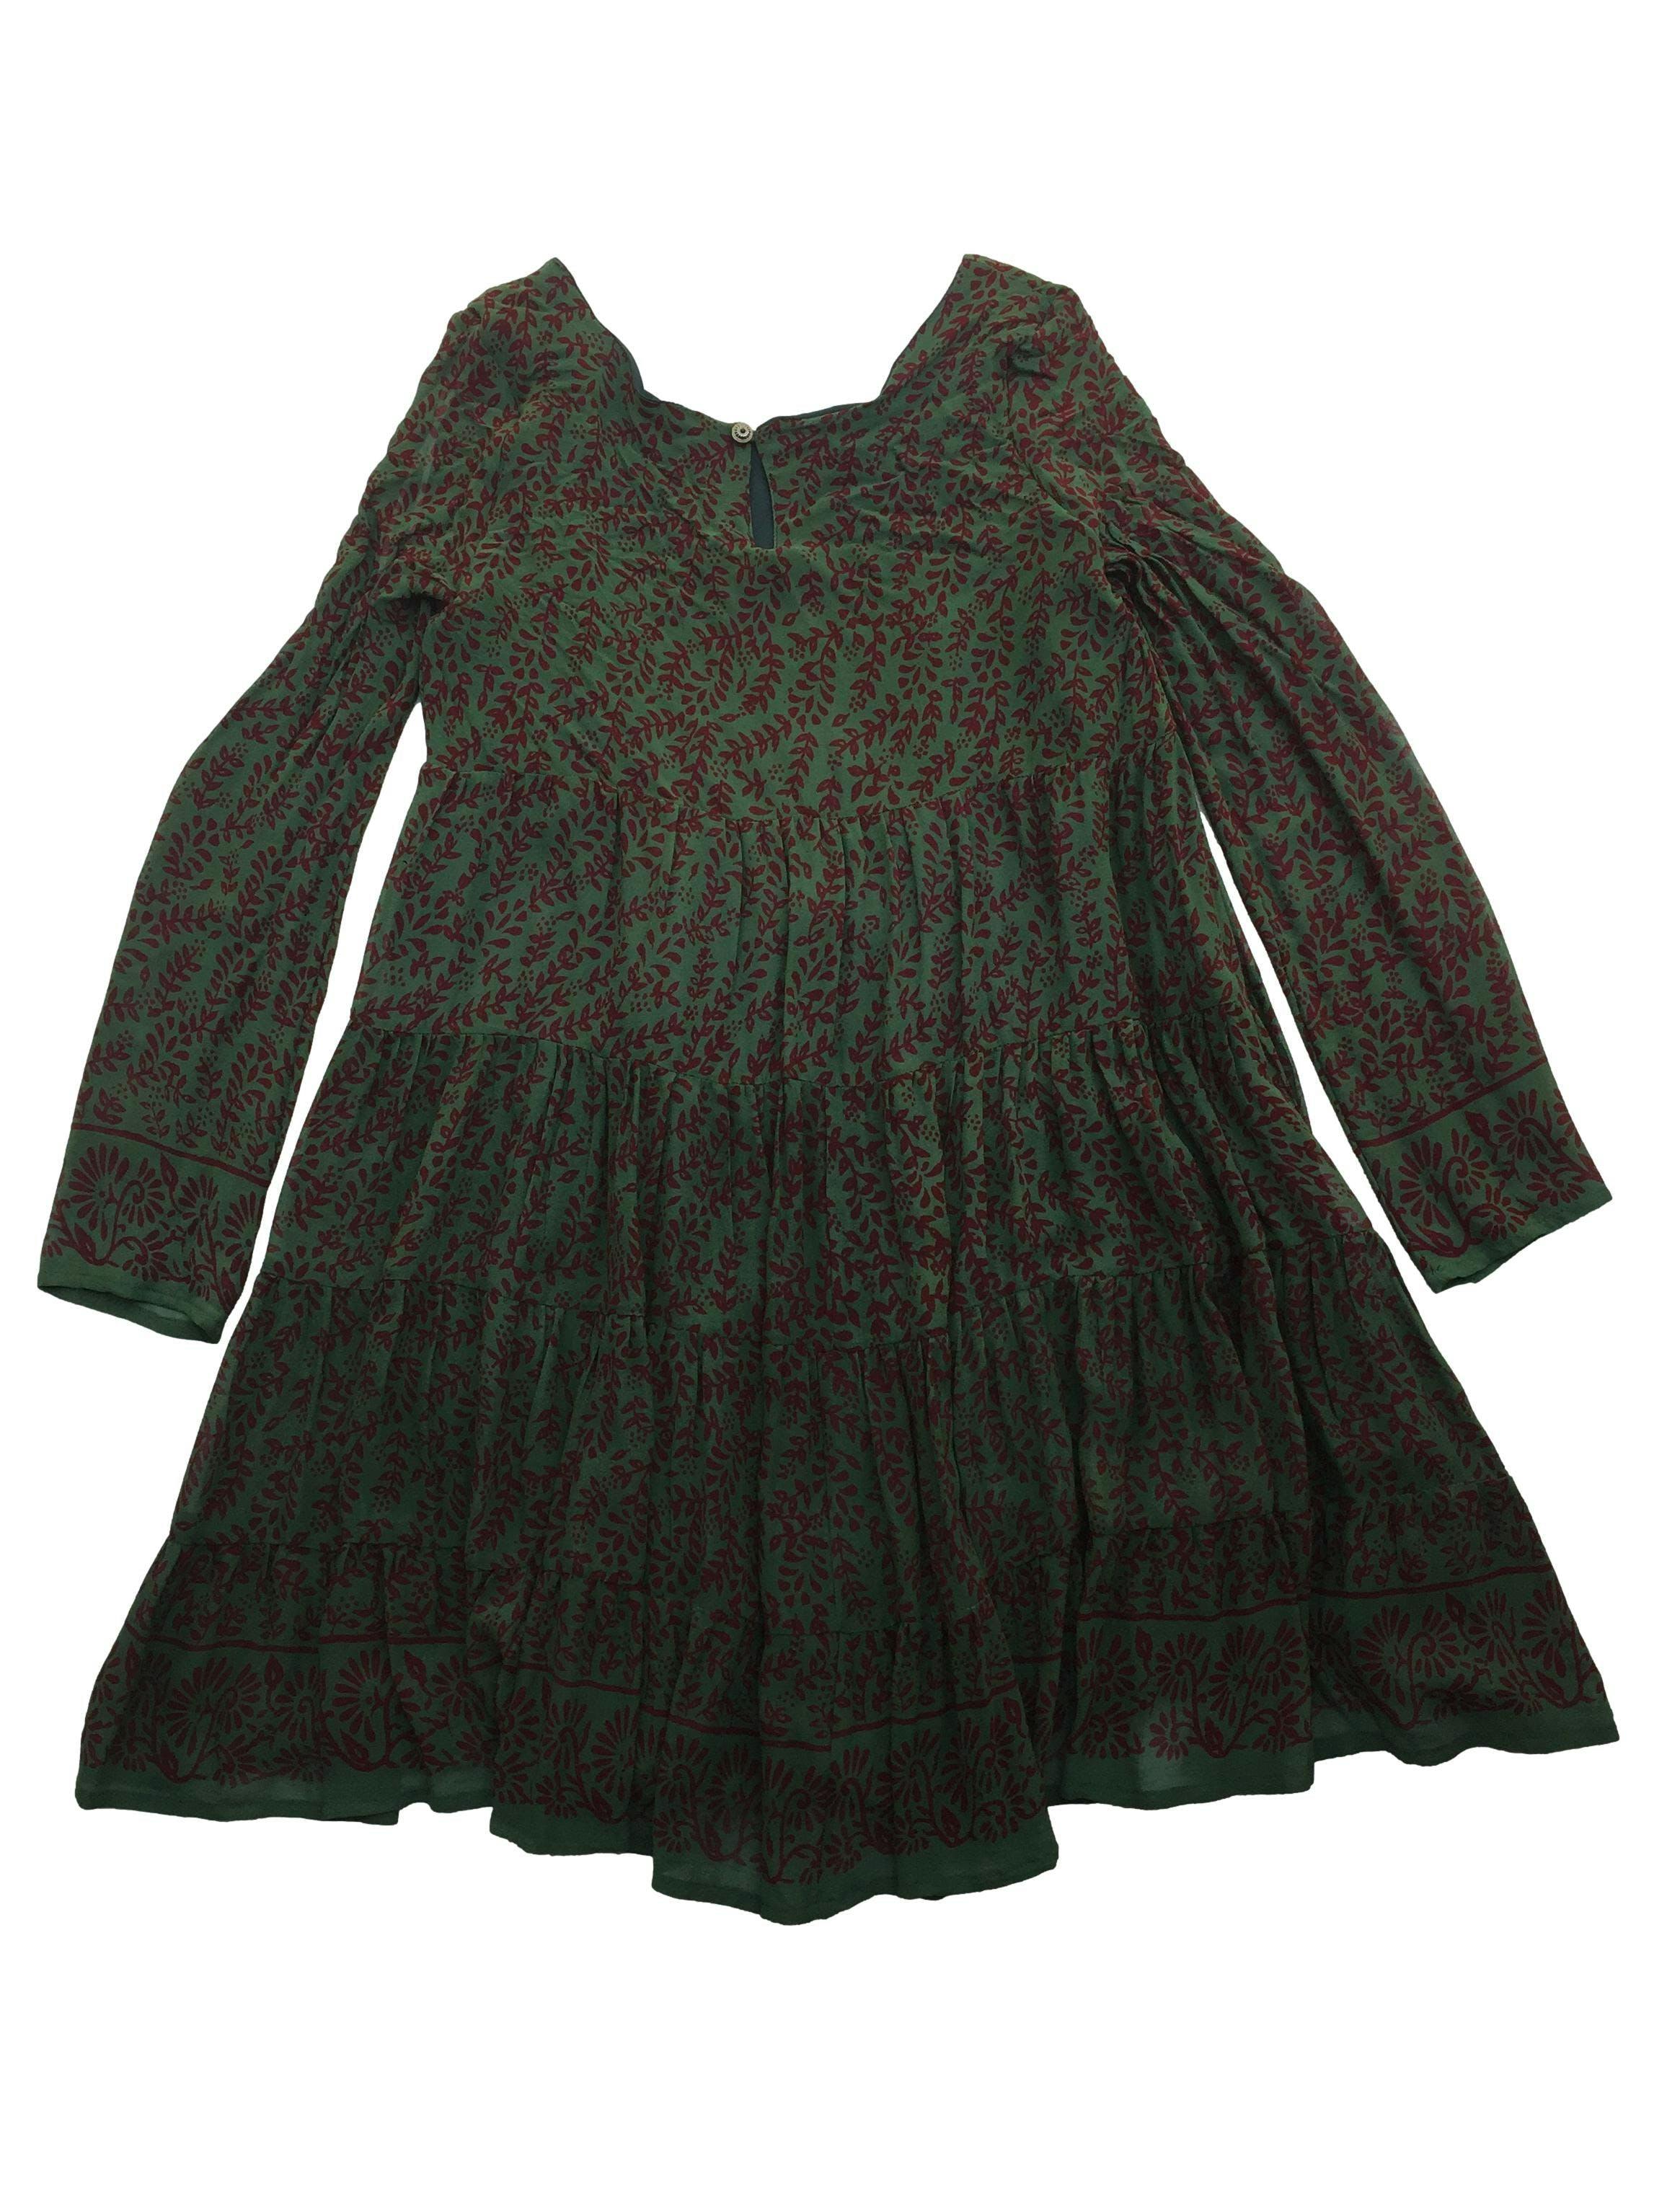 Vestido Rapsodia de seda verde con estampado de hojas guinda, forrado, corte en A y botón posterior en cuello. Busto 88cm Largo 80cm